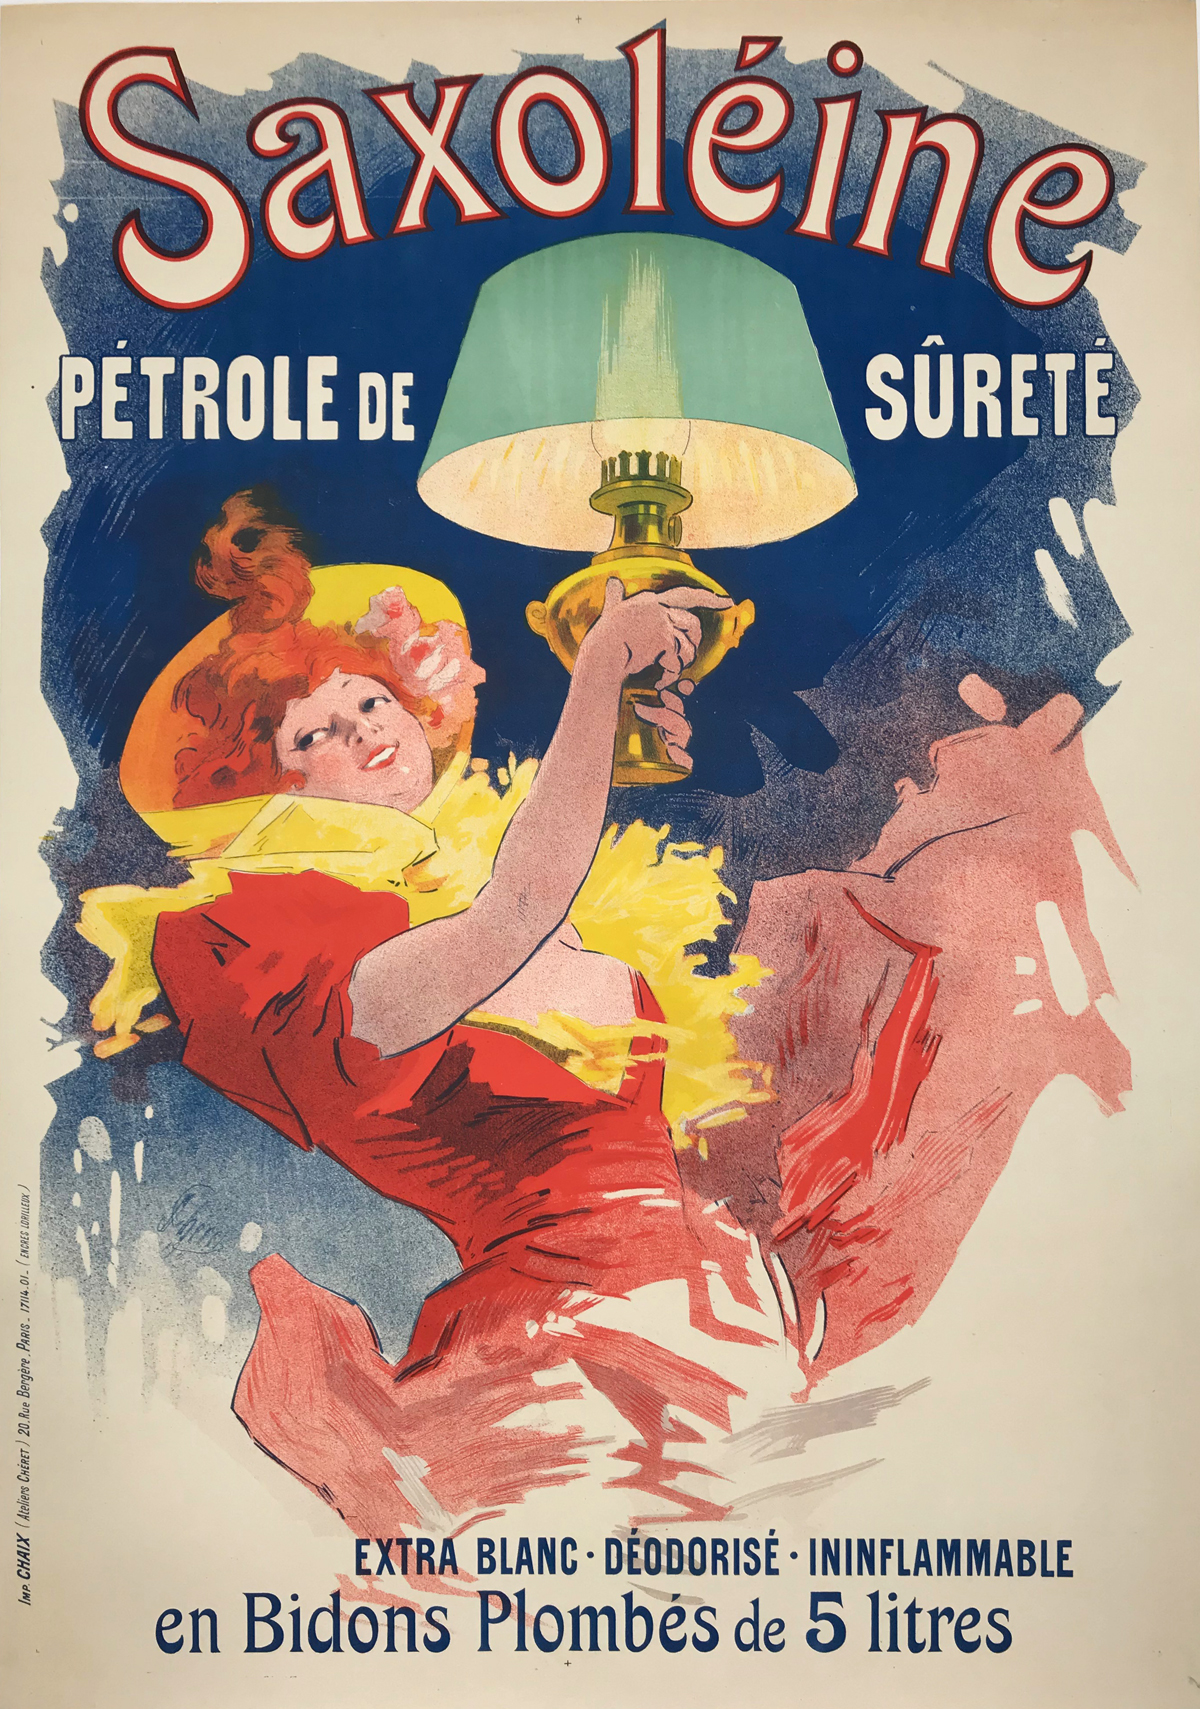 Saxoleine Petrole De Surete original vintage poster by Jules Cheret.